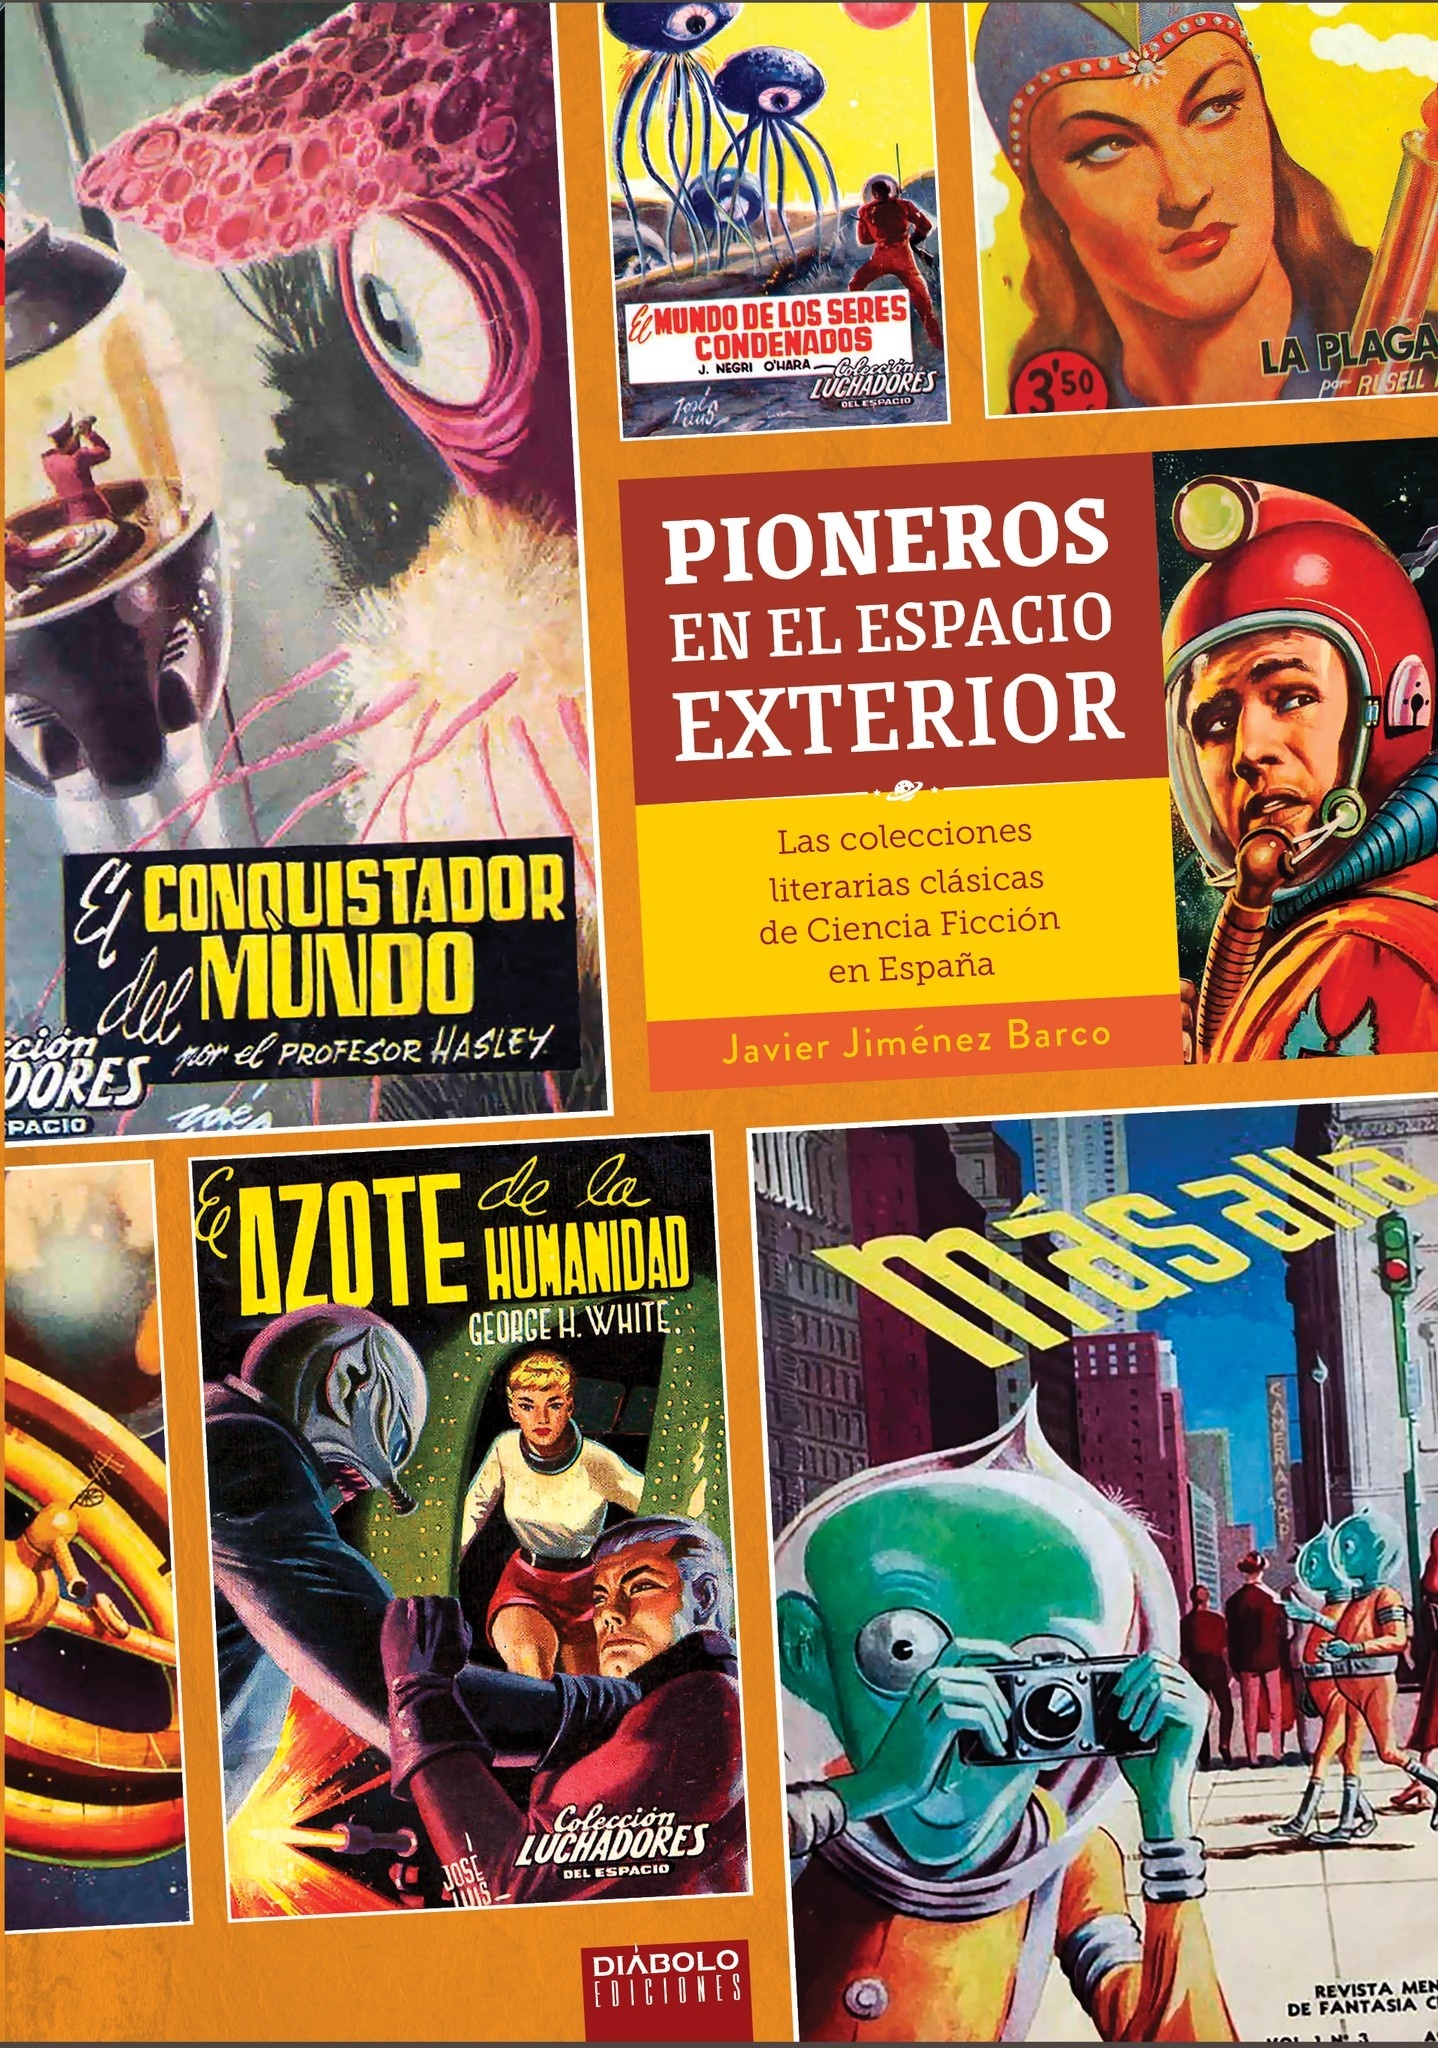 Pioneros en el espacio exterior "Las colecciones literarias clásicas de ciencia ficción en España"